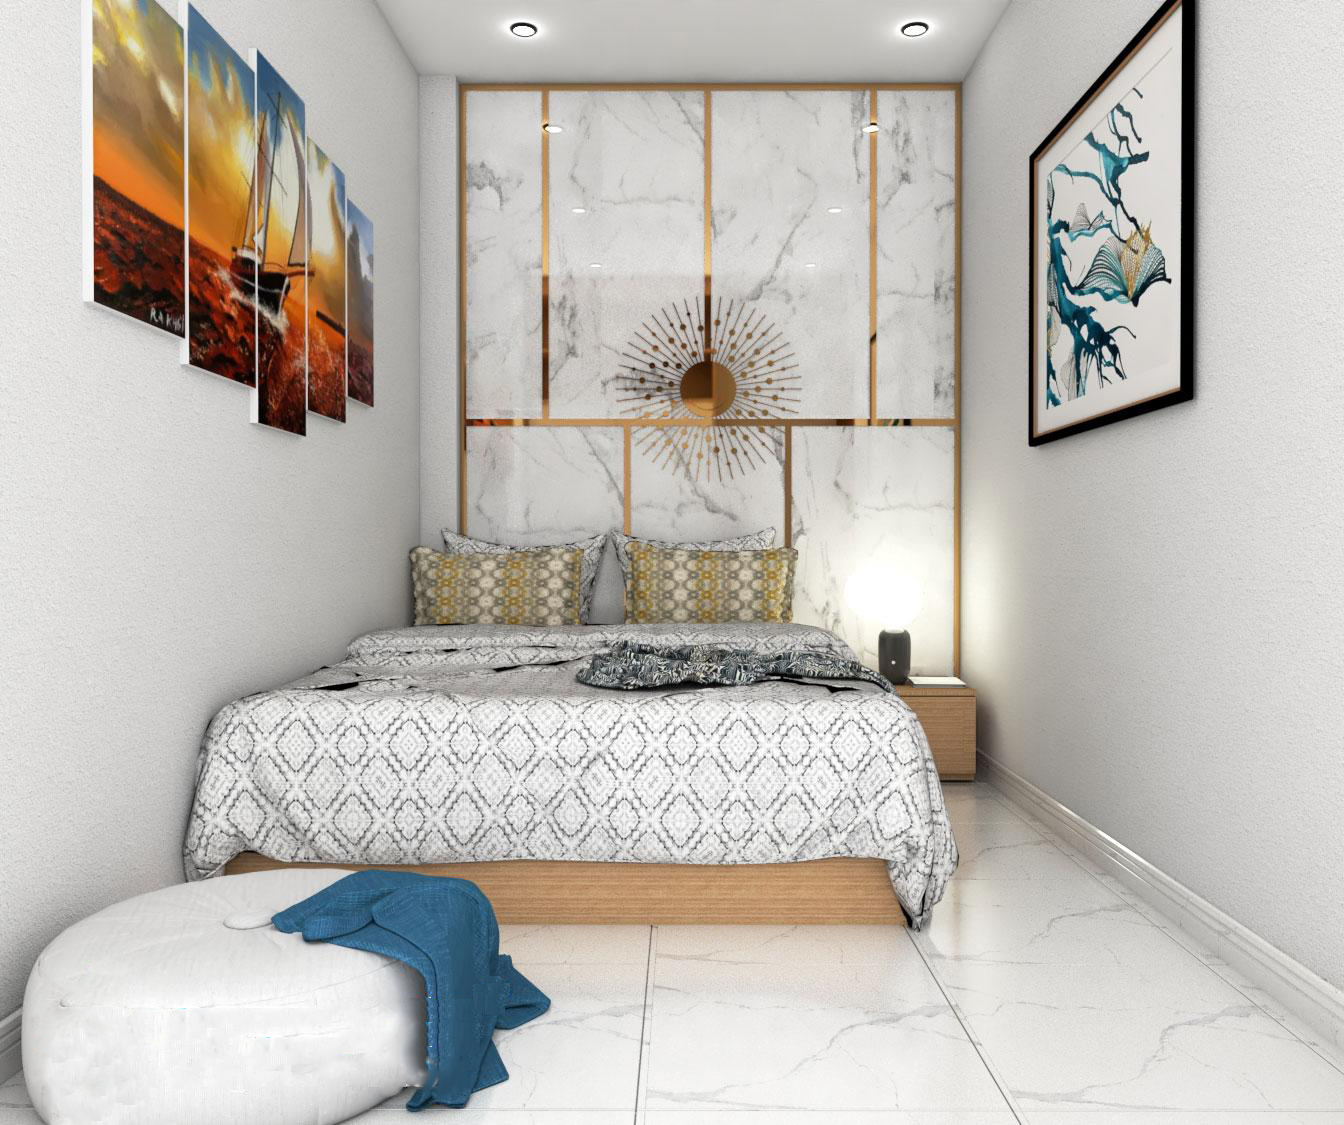 Phòng ngủ 10m2 được lót gạch trắng sang trọng và sàn nhà bóng nên dễ dàng cho việc vệ sinh